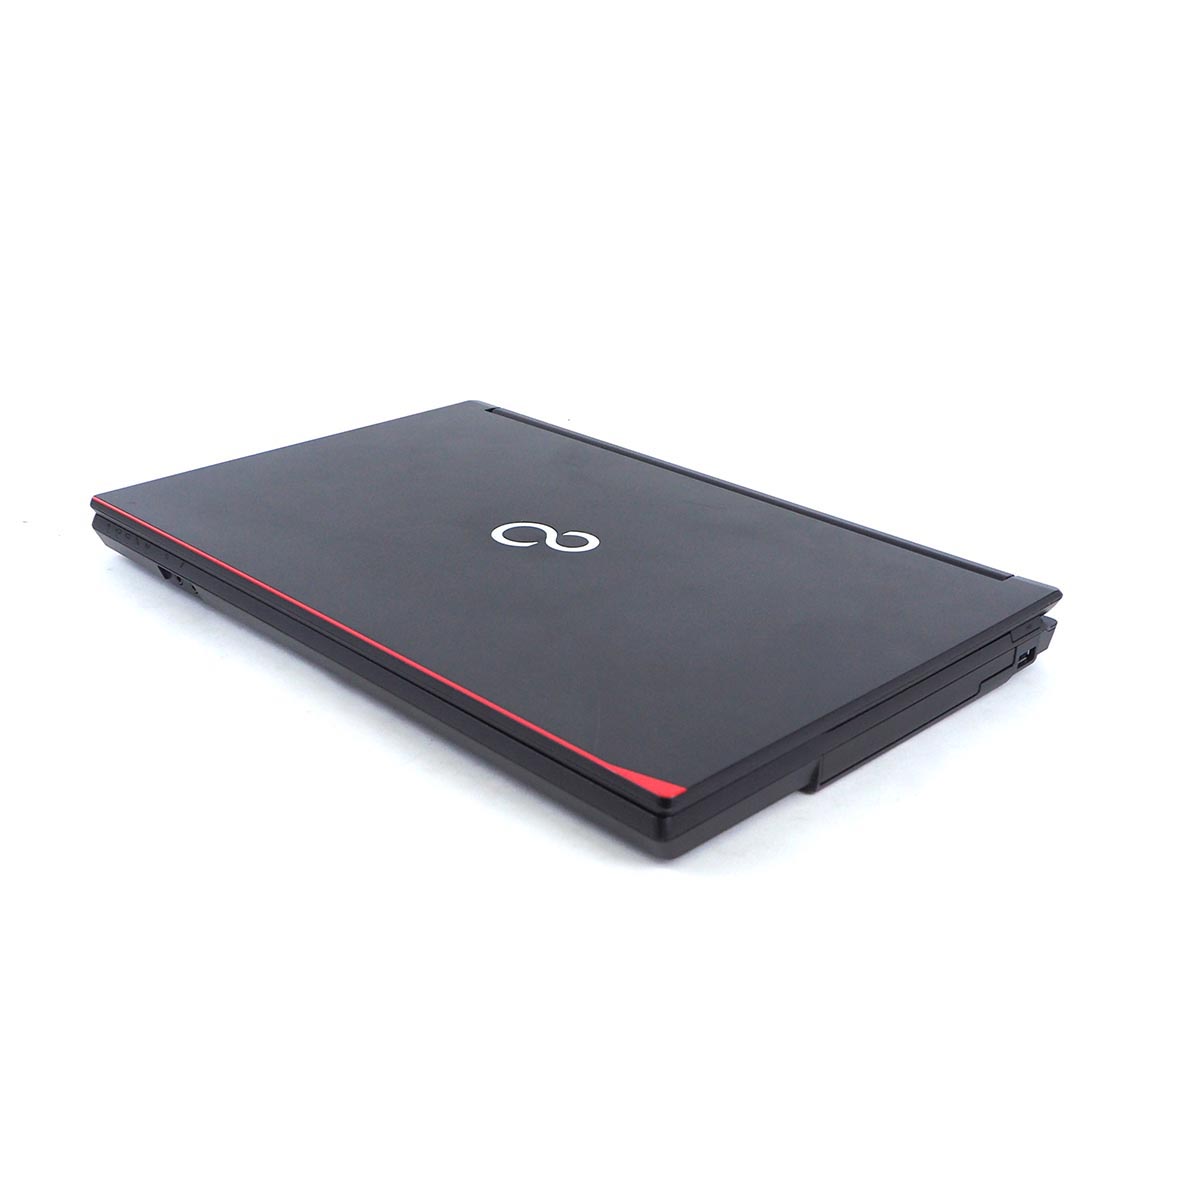 รายละเอียดเพิ่มเติมเกี่ยวกับ โน๊ตบุ๊ค Fu LifeBook A577/R Celeron Gen7 / RAM 4-8GB (DDR4) HDD/SSD หน้าจอ 15.6 นิ้ว คีย์แยก Wifi-Blth ในตัว Refhed laptop used notebook คอมพิวเตอร์ 2022 มีประกัน By Totalsol